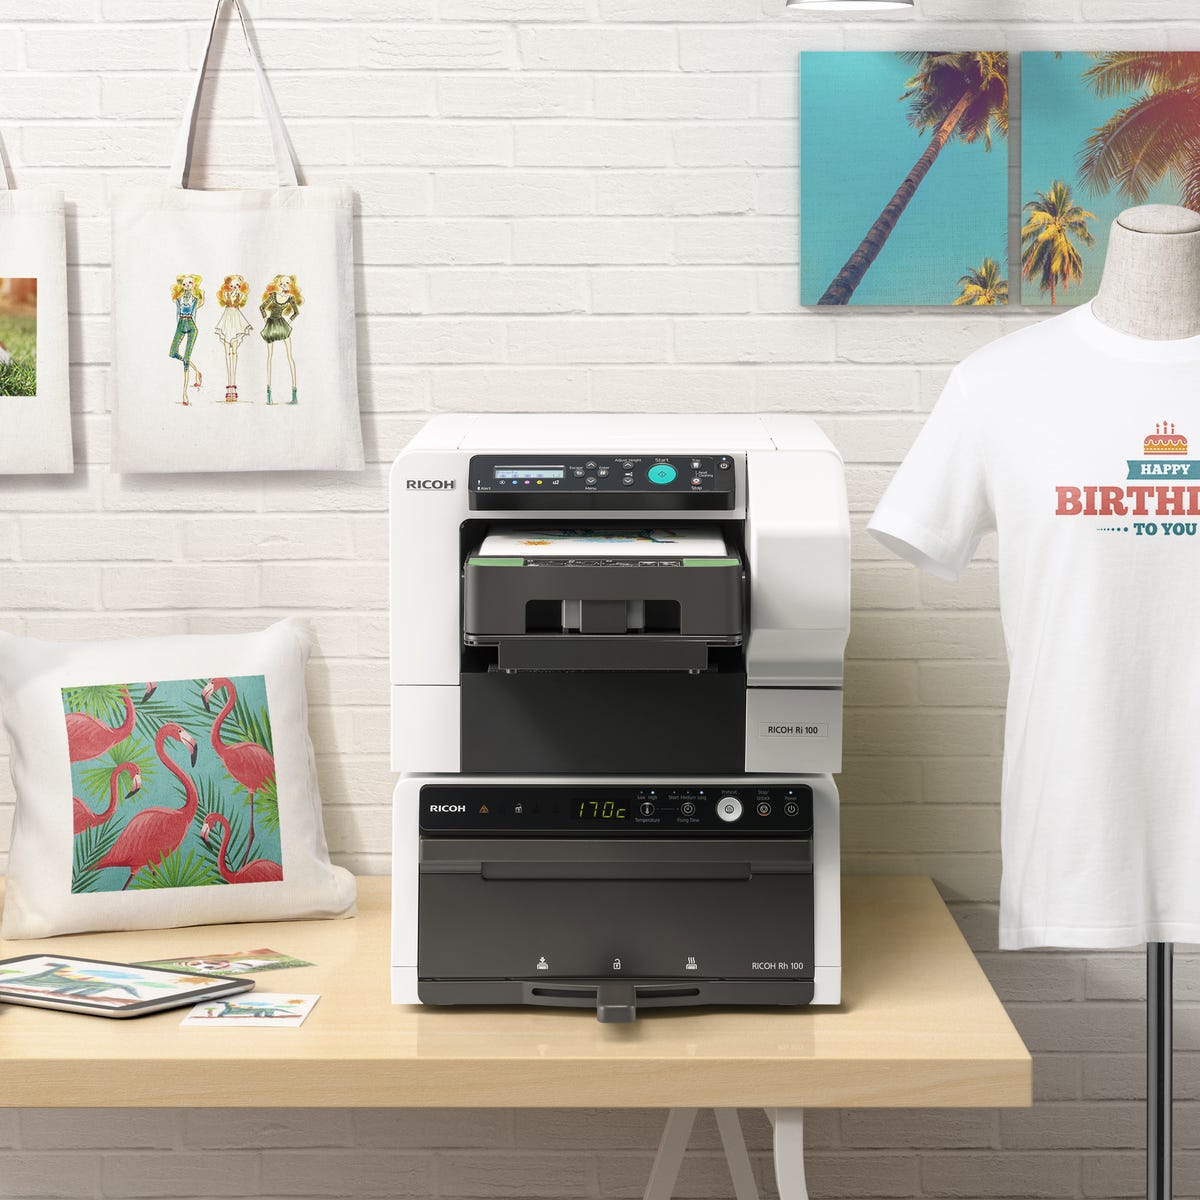 Ricoh Ri 100 a printer on your desktop - CNET